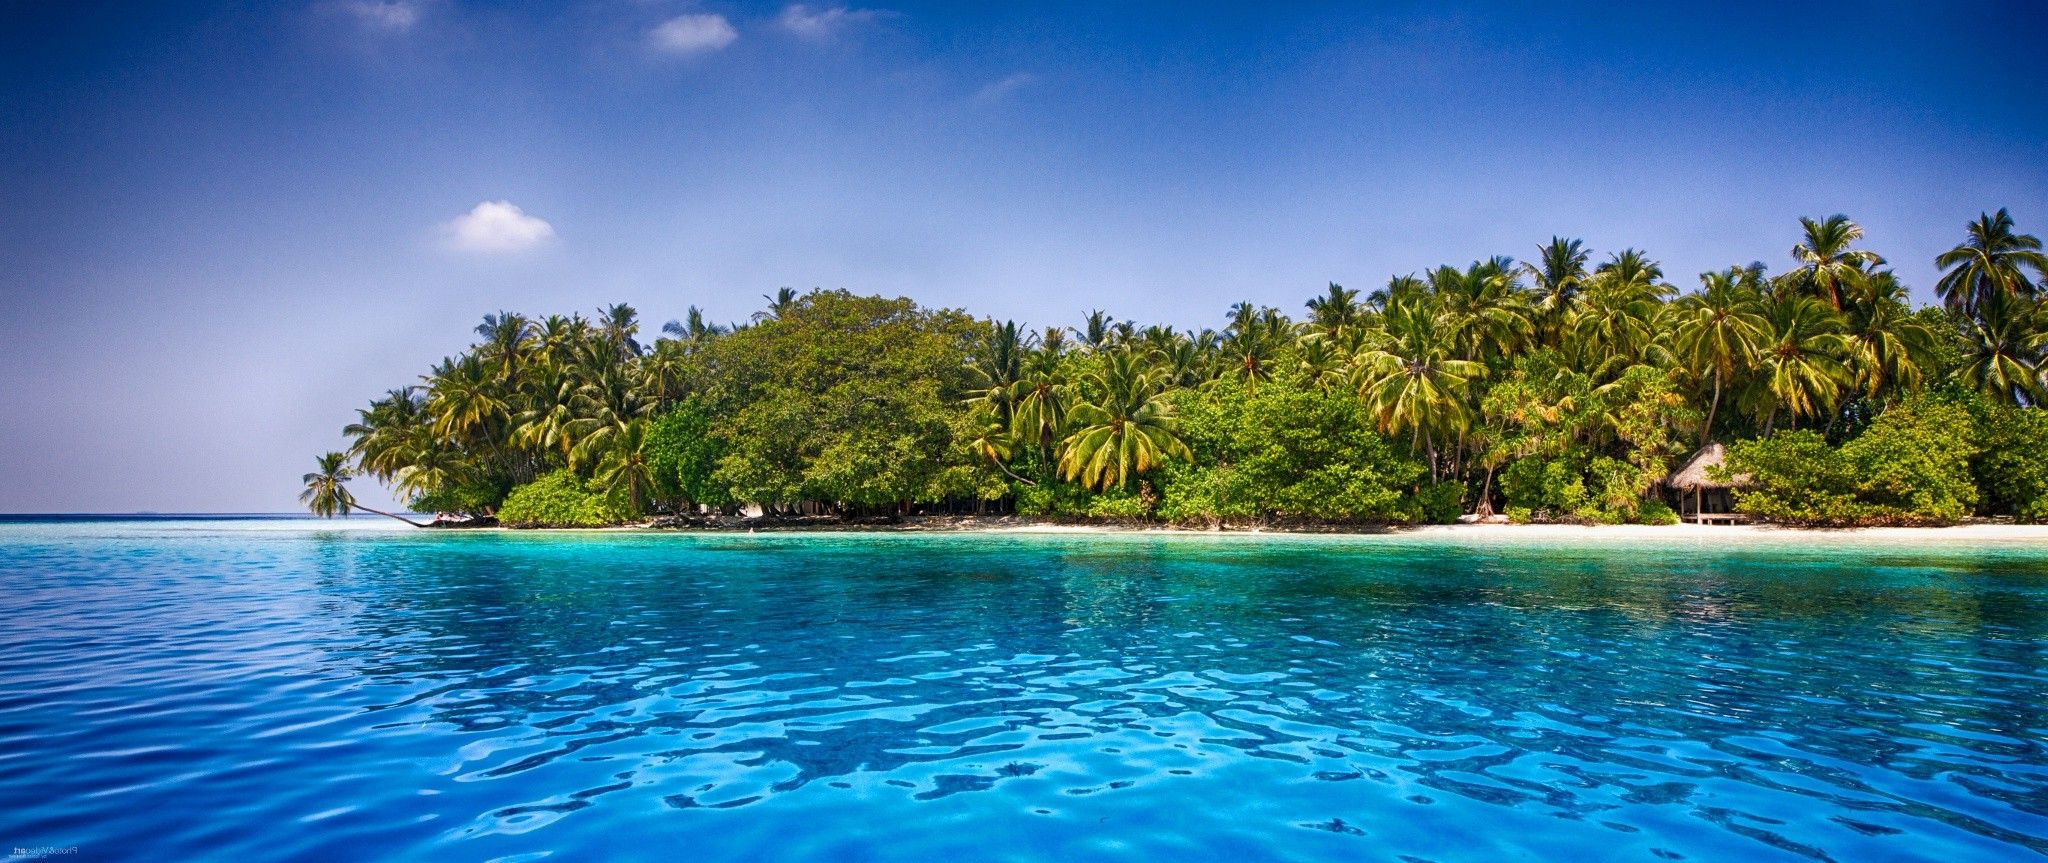 Maldives, Beach, Palm Trees, Tropical, Sea, Sand, Water, Summer